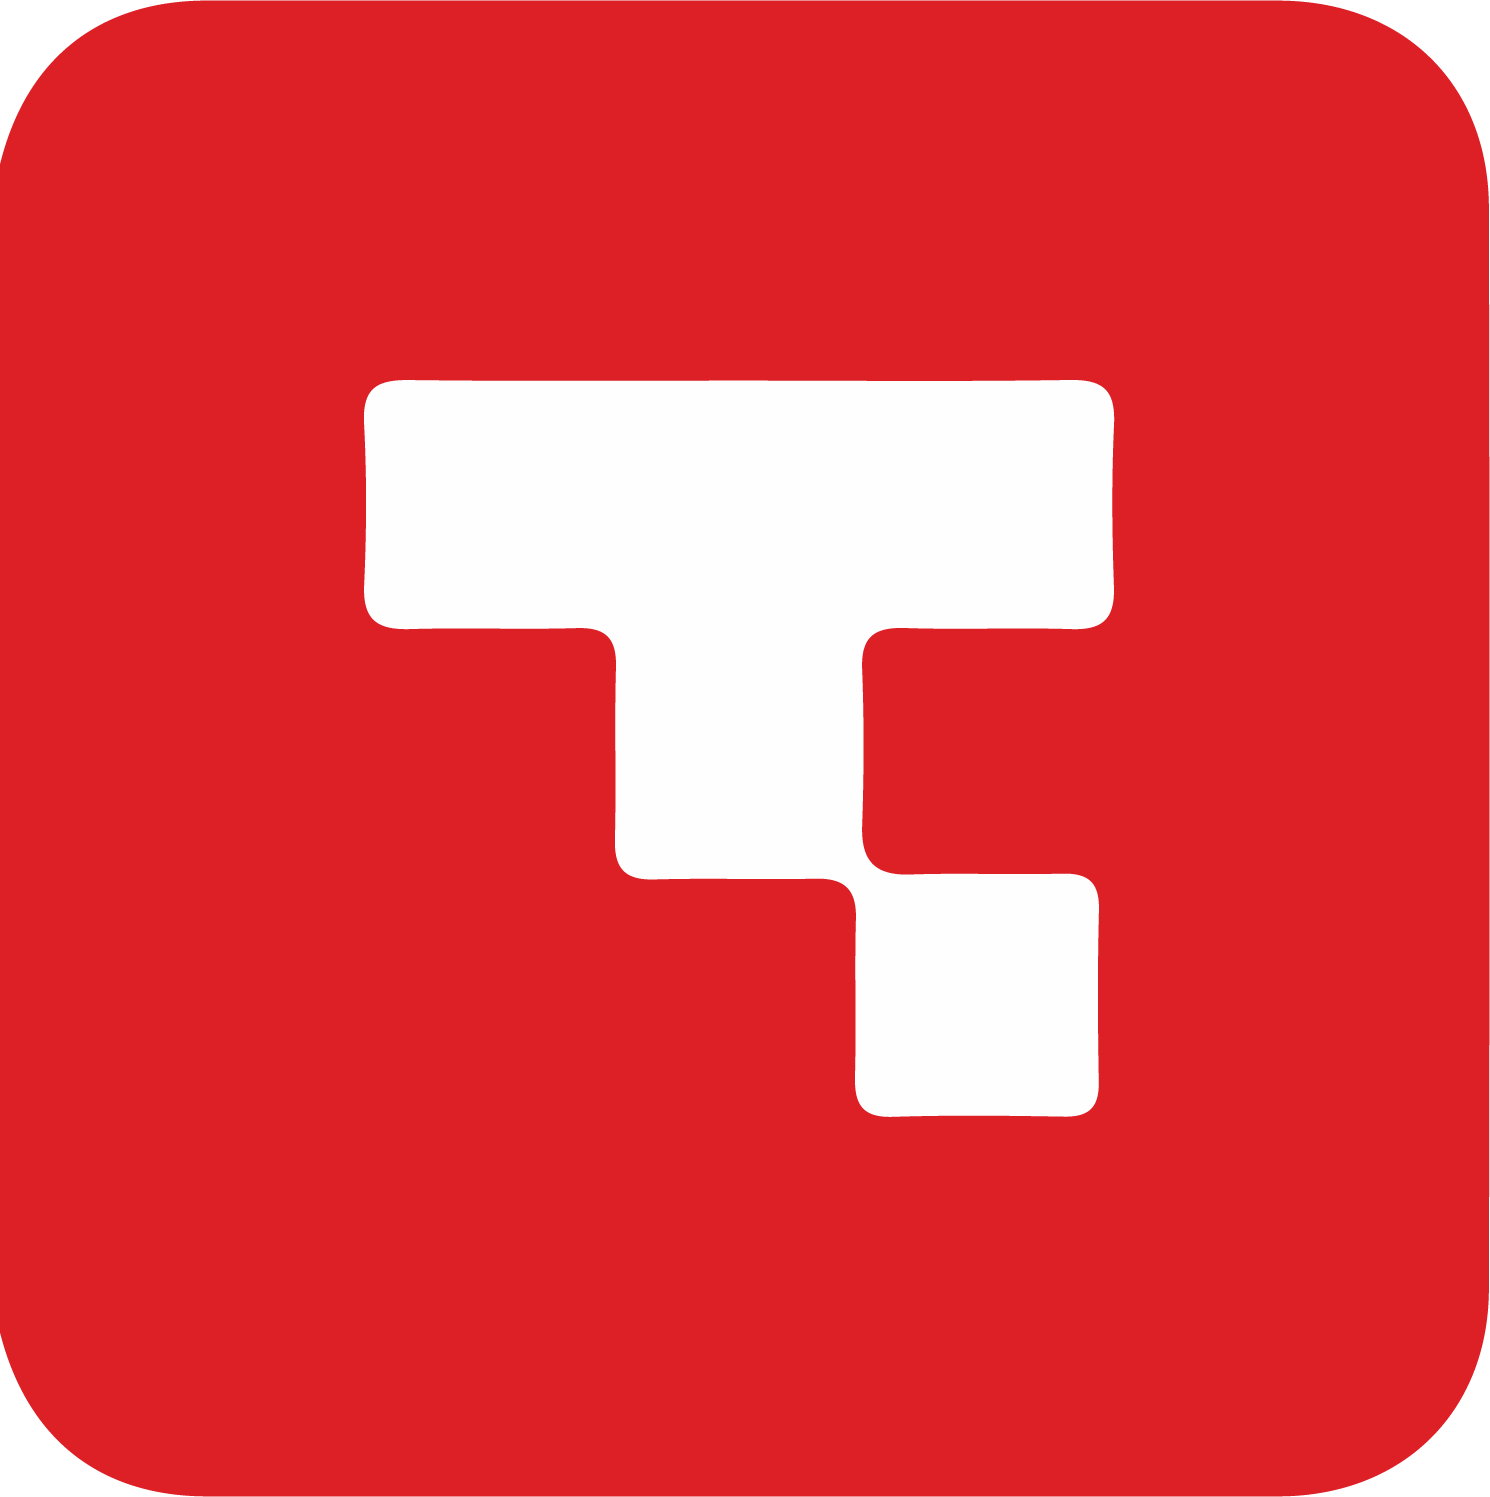 TANLA logo (transparent PNG)